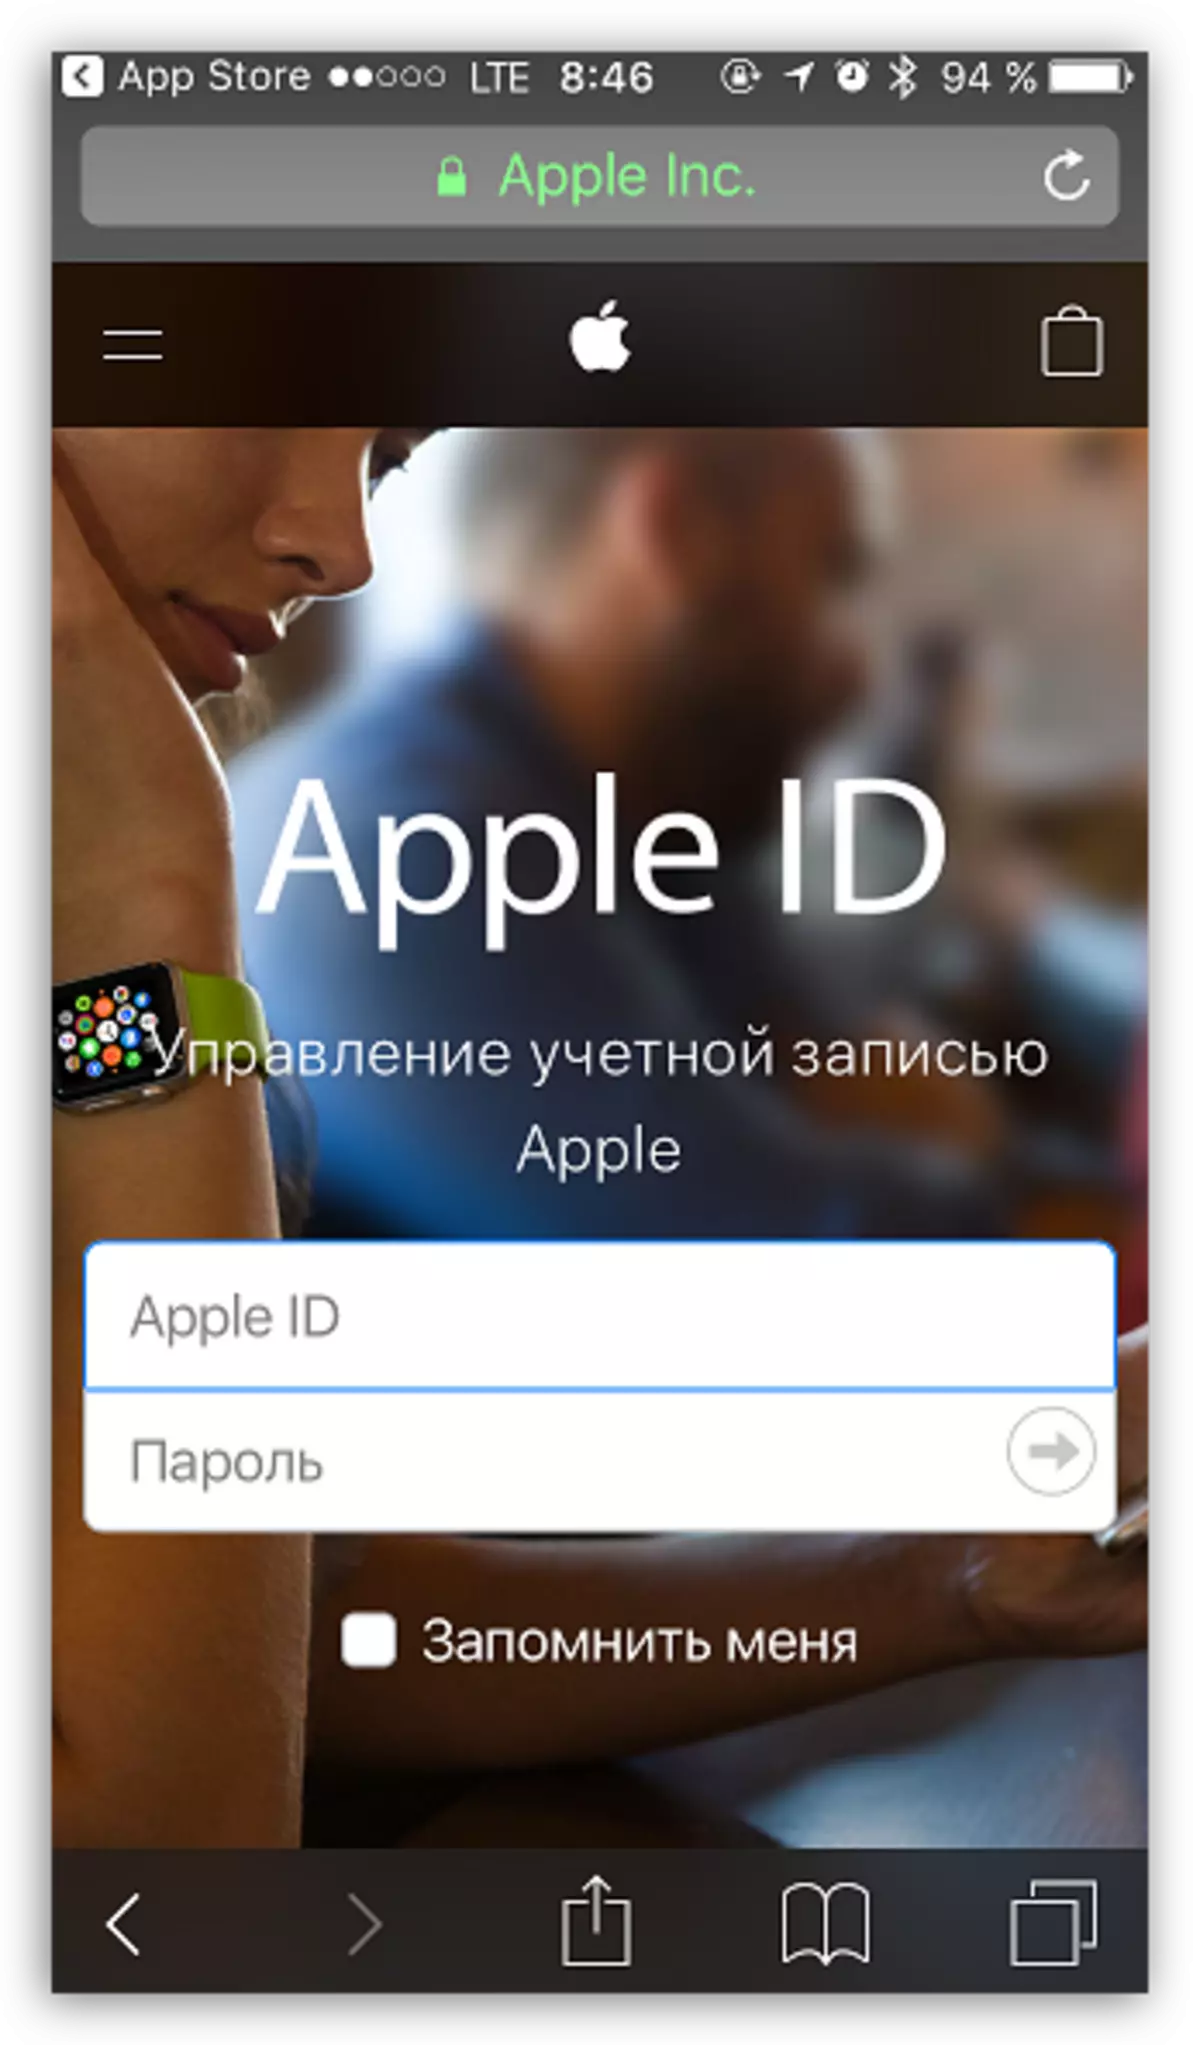 เข้าสู่ Apple ID iPhone